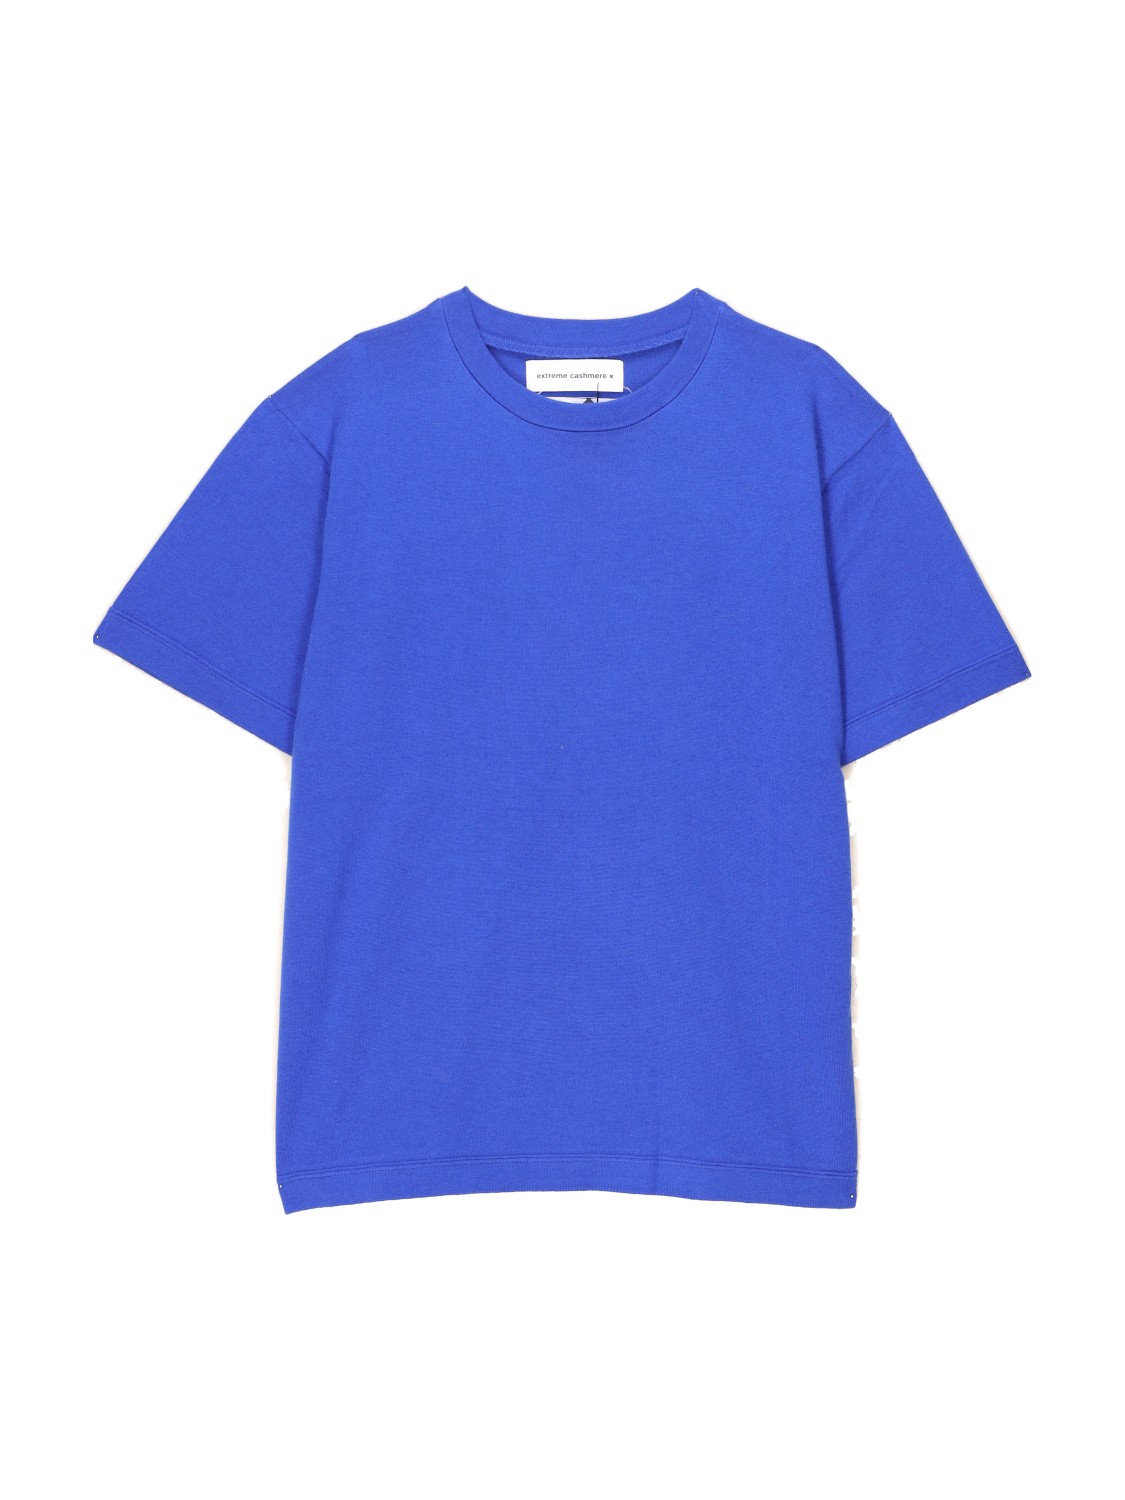 Extreme Cashmere N° 268 Cuba – Boxy-T-Shirt aus Baumwoll-Kaschmir-Mix   grün One Size